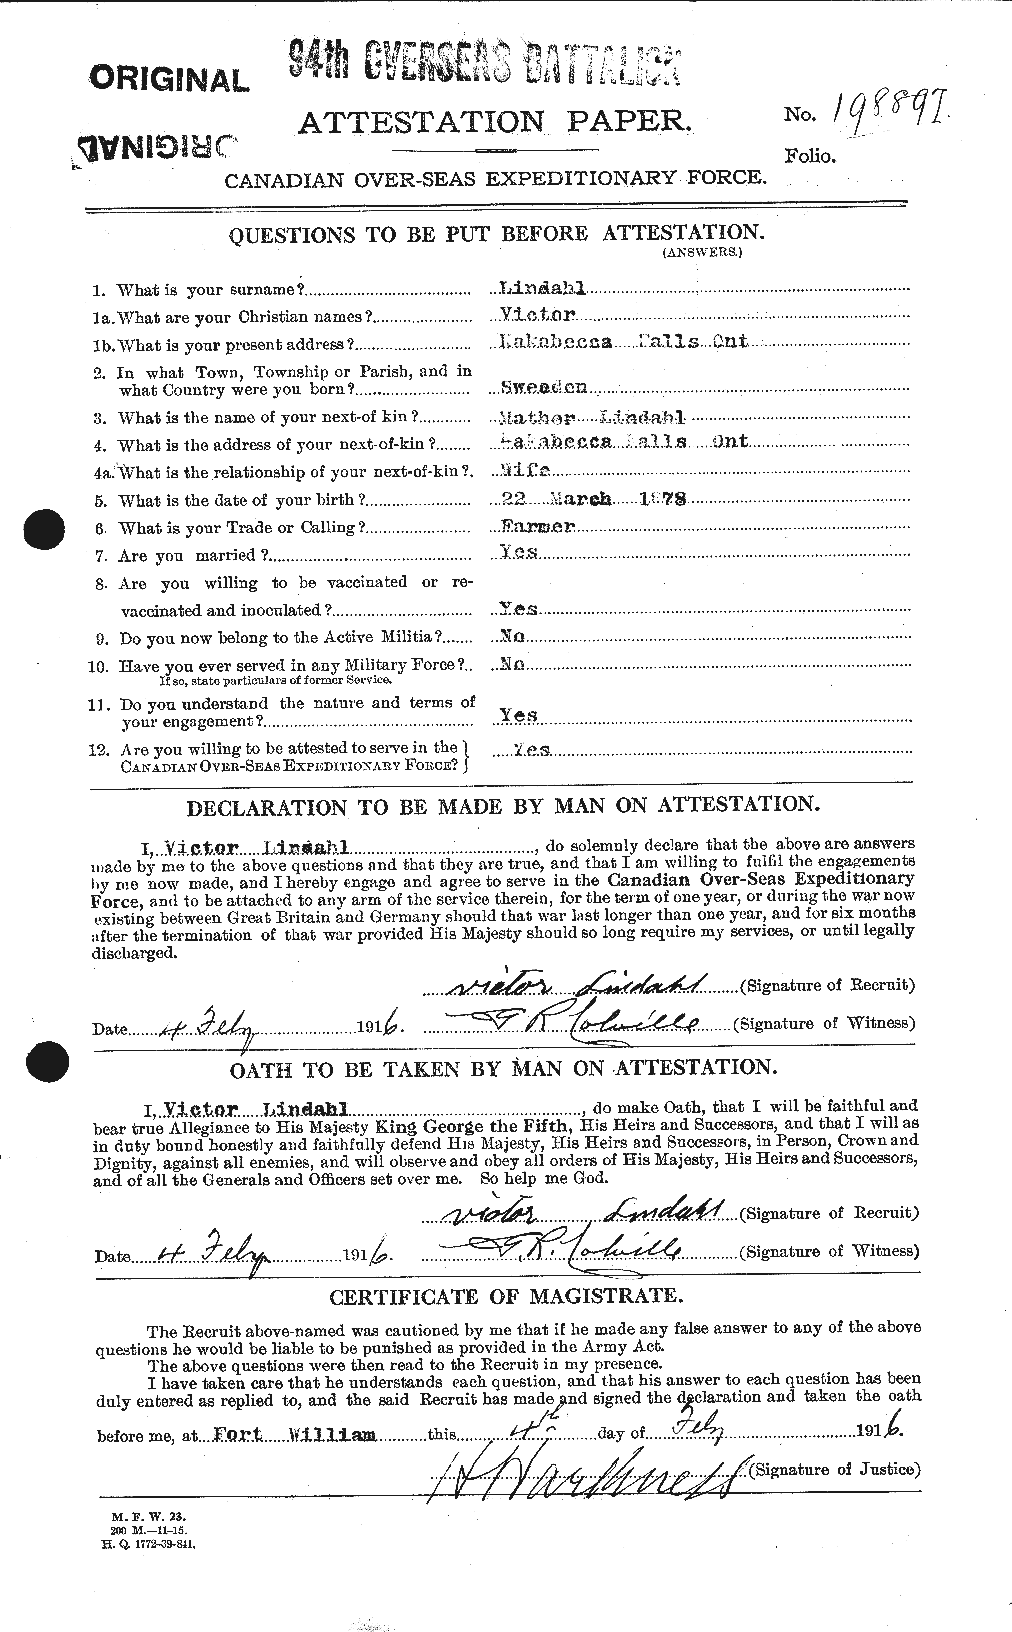 Dossiers du Personnel de la Première Guerre mondiale - CEC 467638a